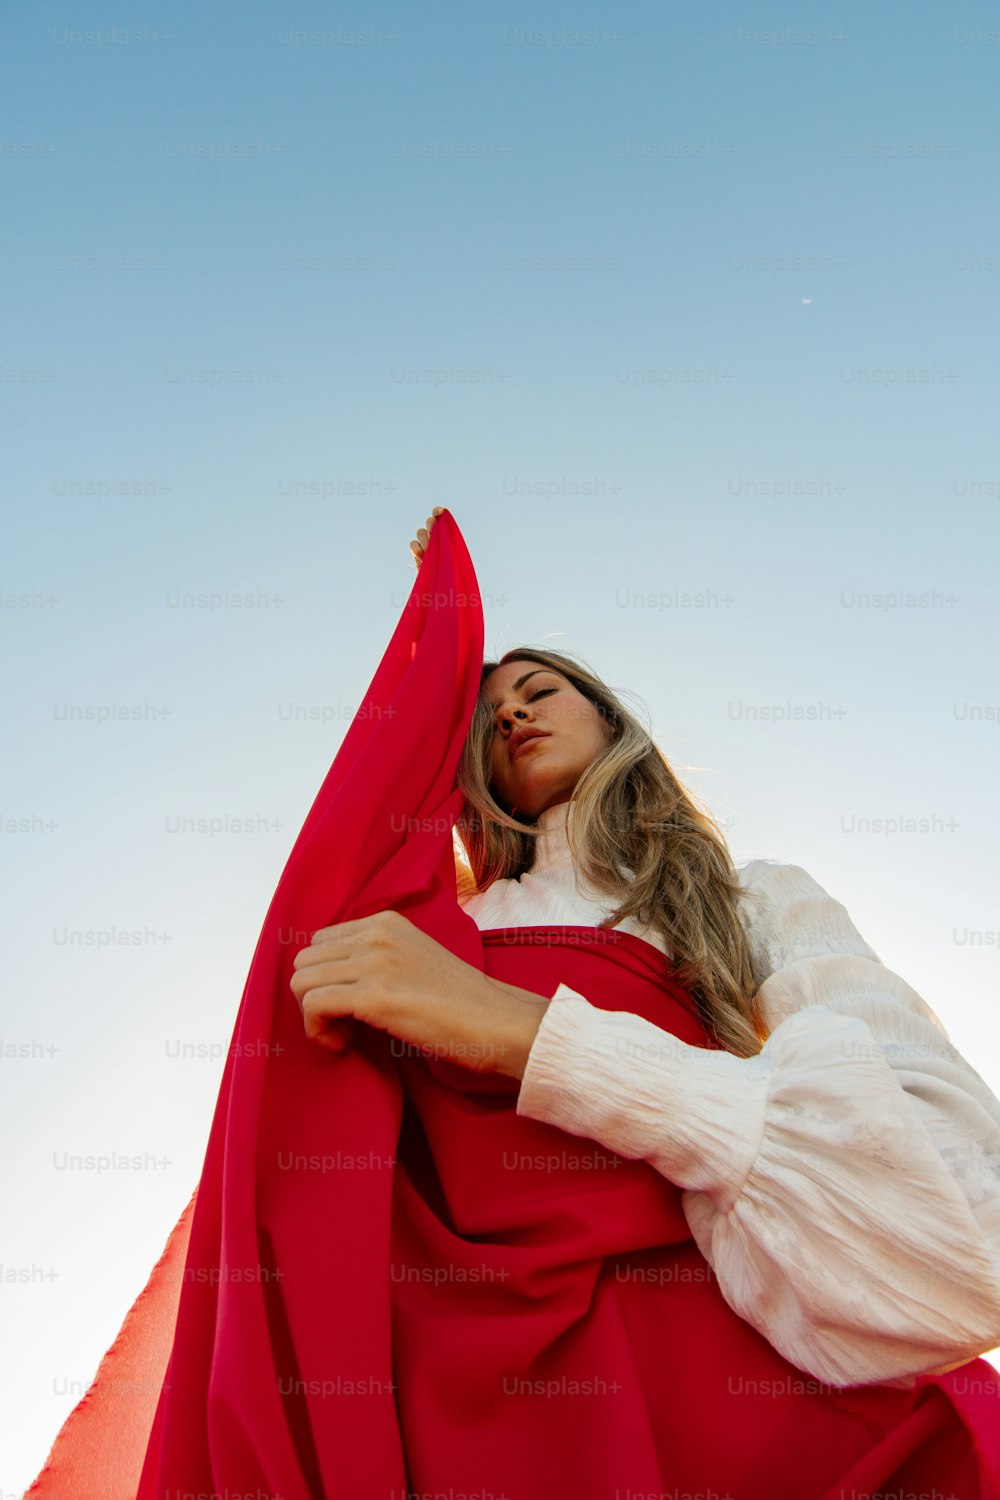 빨간 망토를 입은 여자가 사진을 찍기 위해 포즈를 취하고 있다